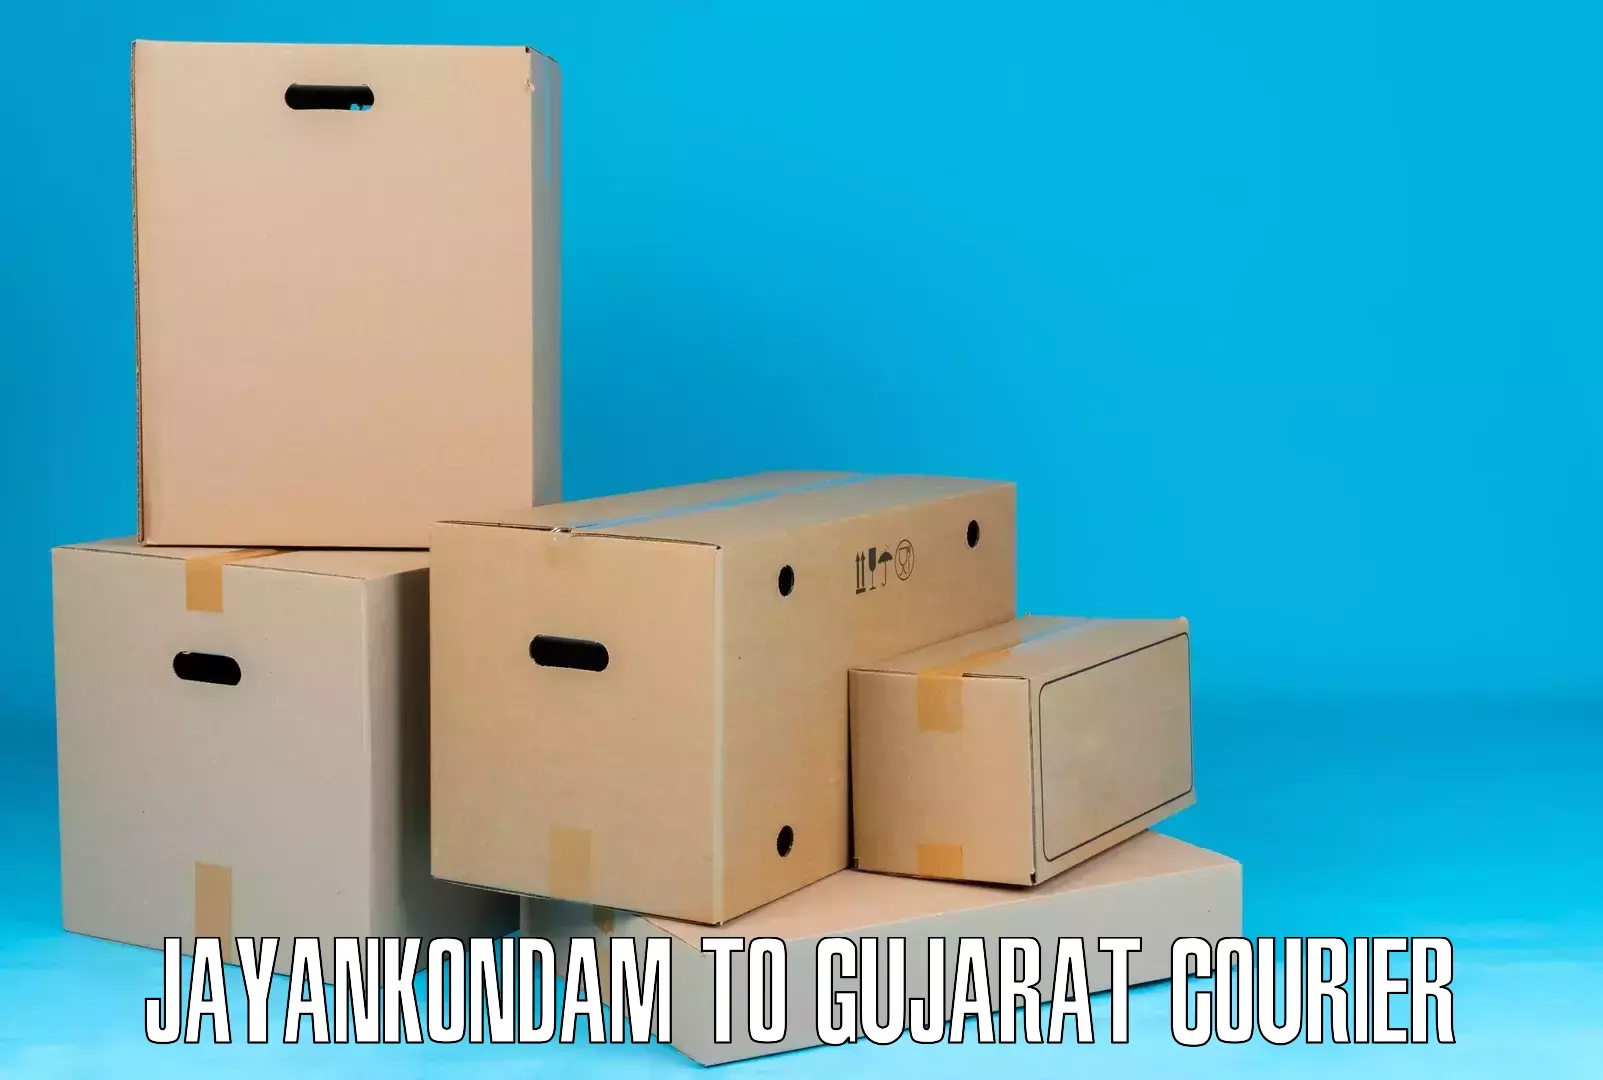 Cargo courier service Jayankondam to Vadnagar